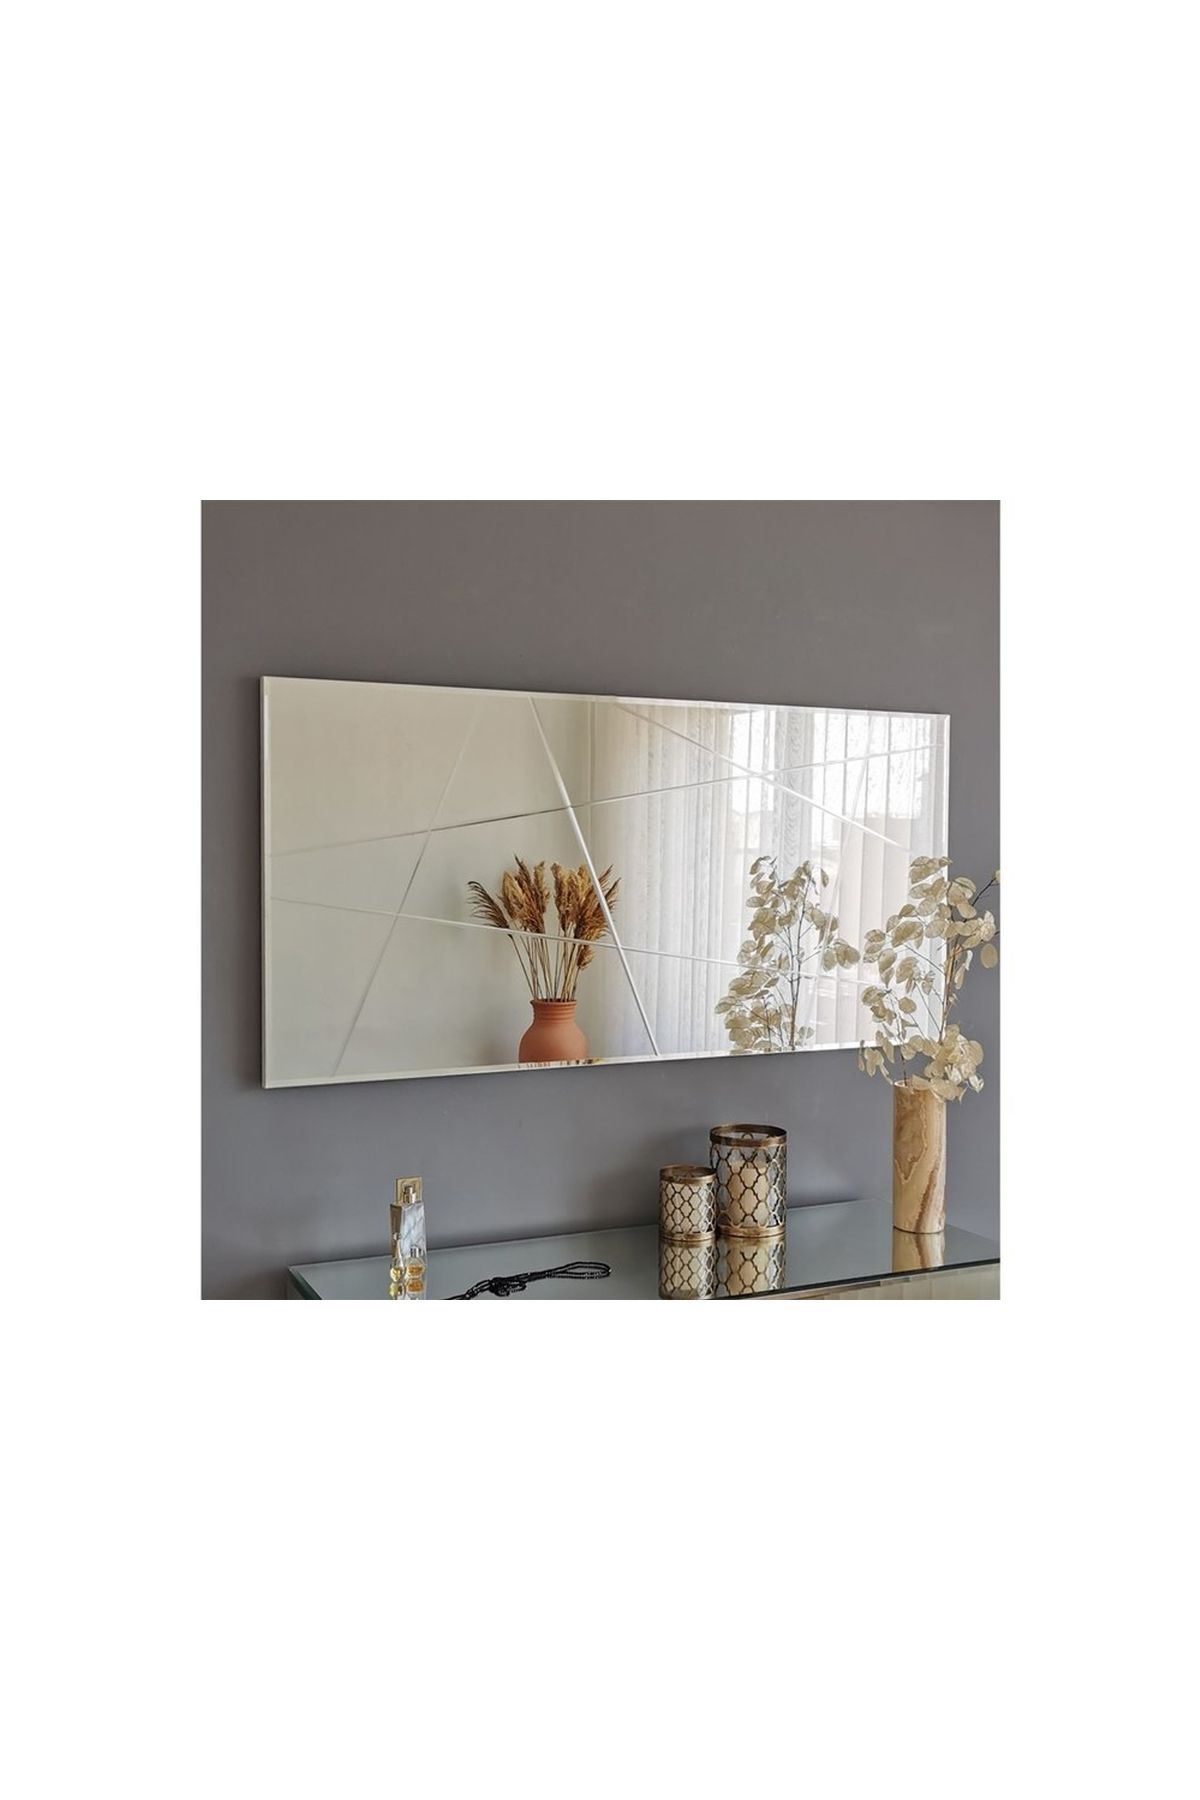 Vivense Neostill Modern Dekoratif Salon Ayna A331y